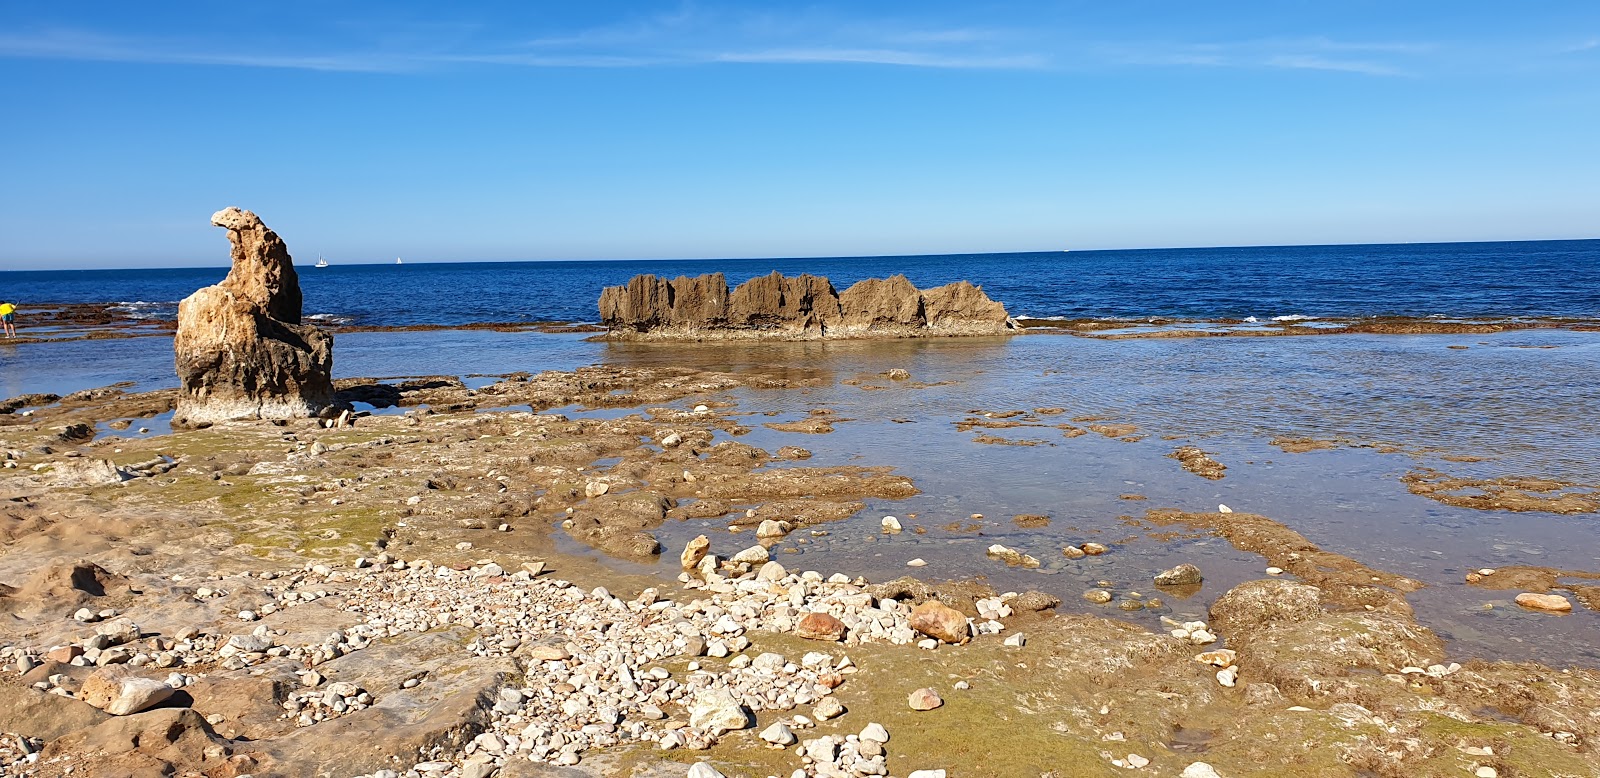 Playa les rotes denia'in fotoğrafı mavi sular yüzey ile